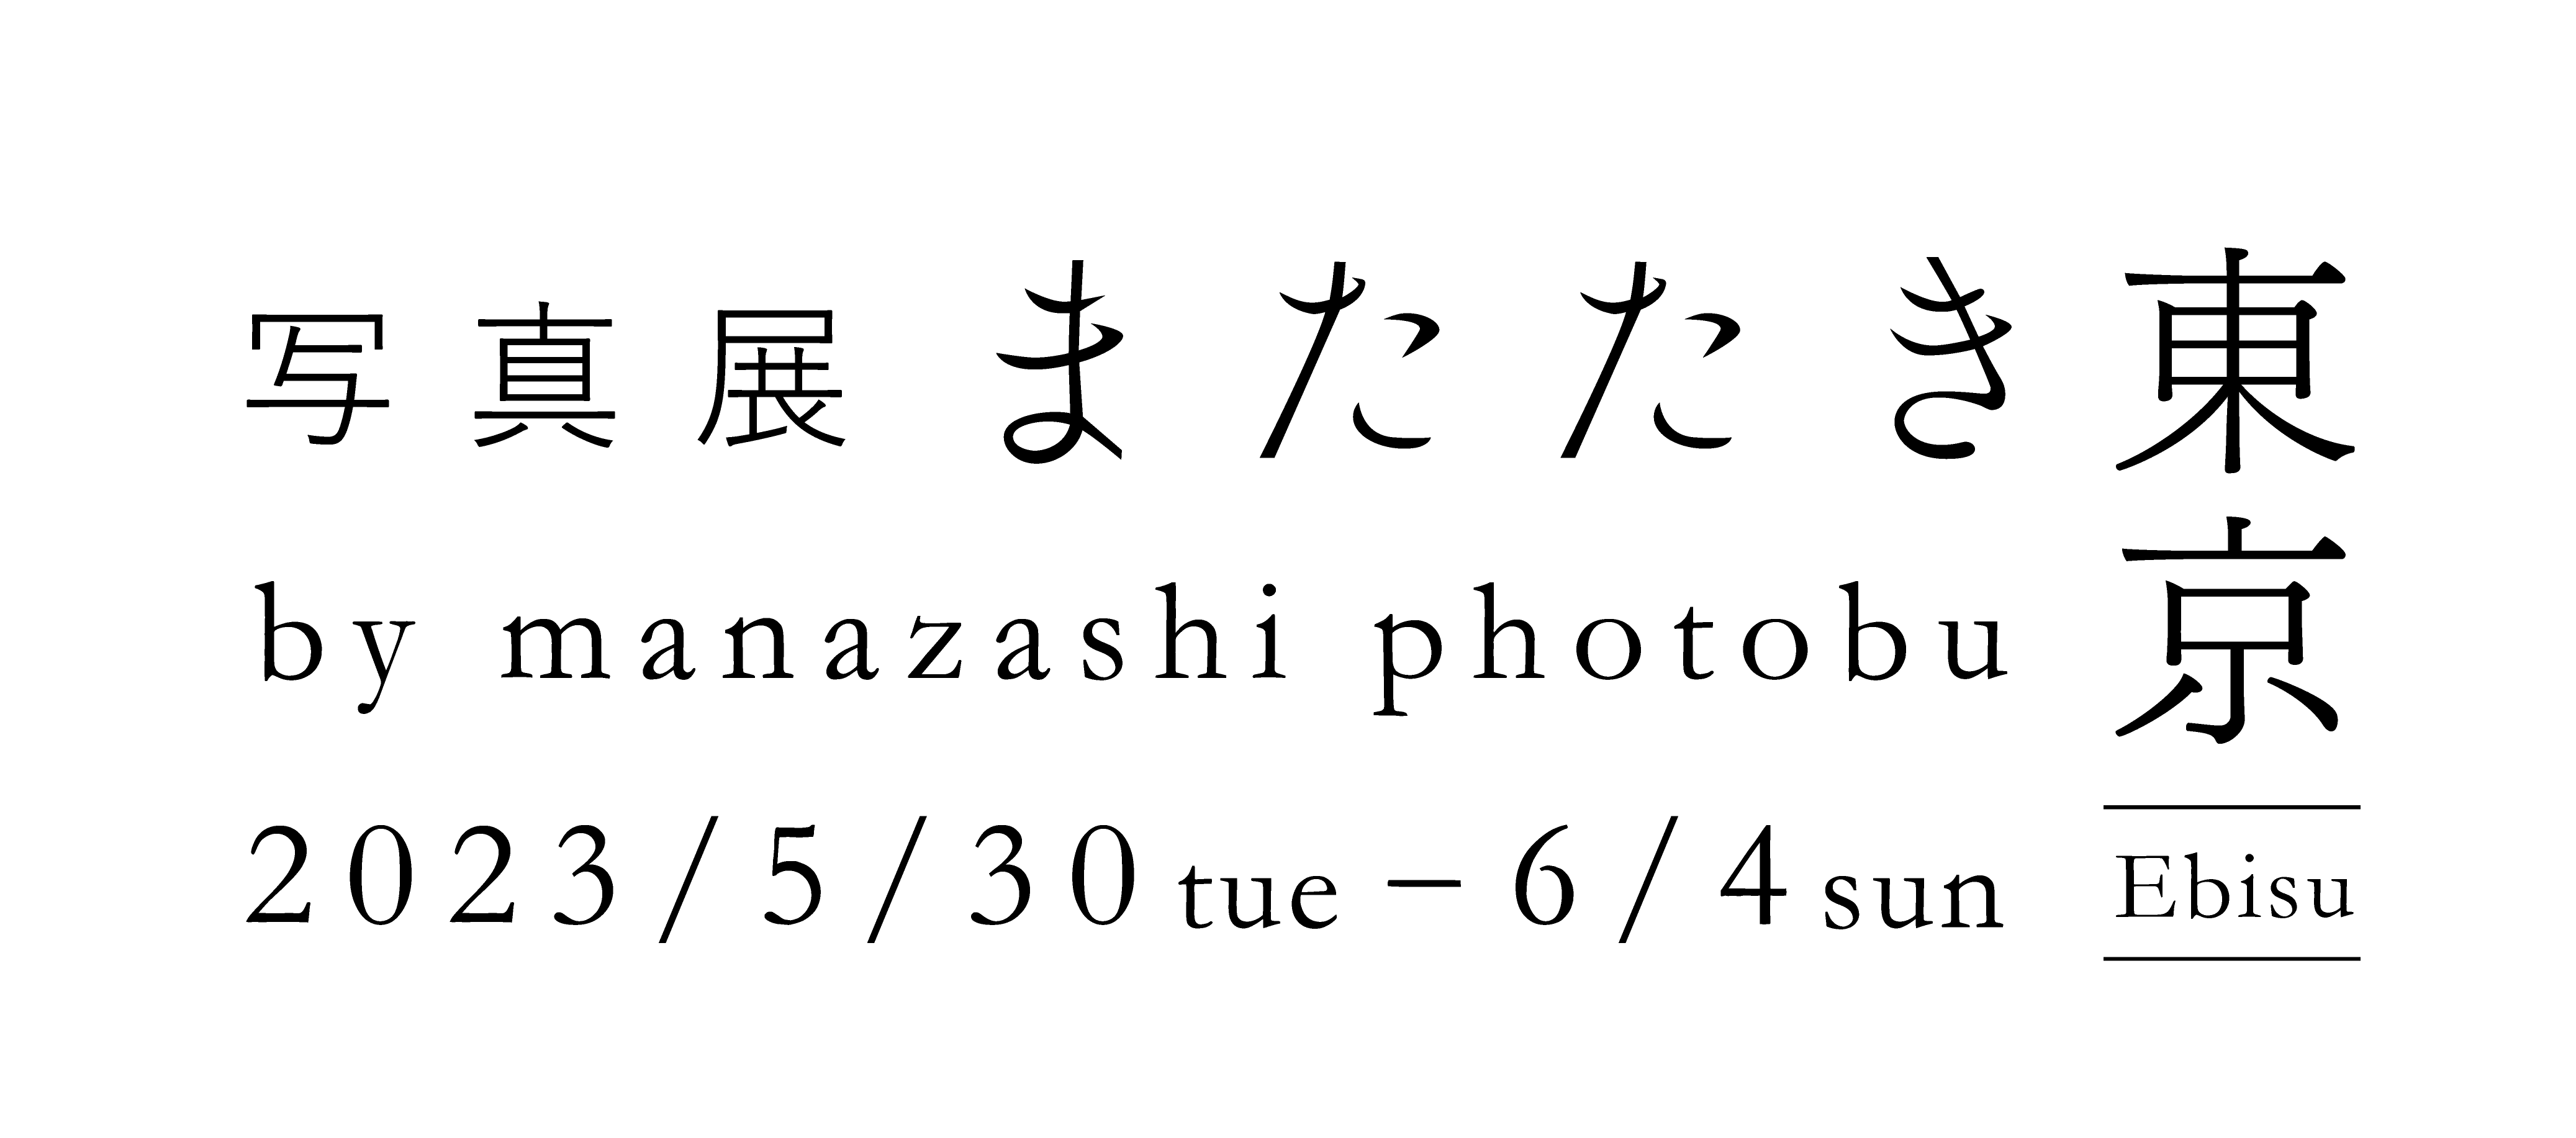 写真展またたき 東京巡回展 - PHOTOPRI【写真展・美術展品質のプリントサービス】